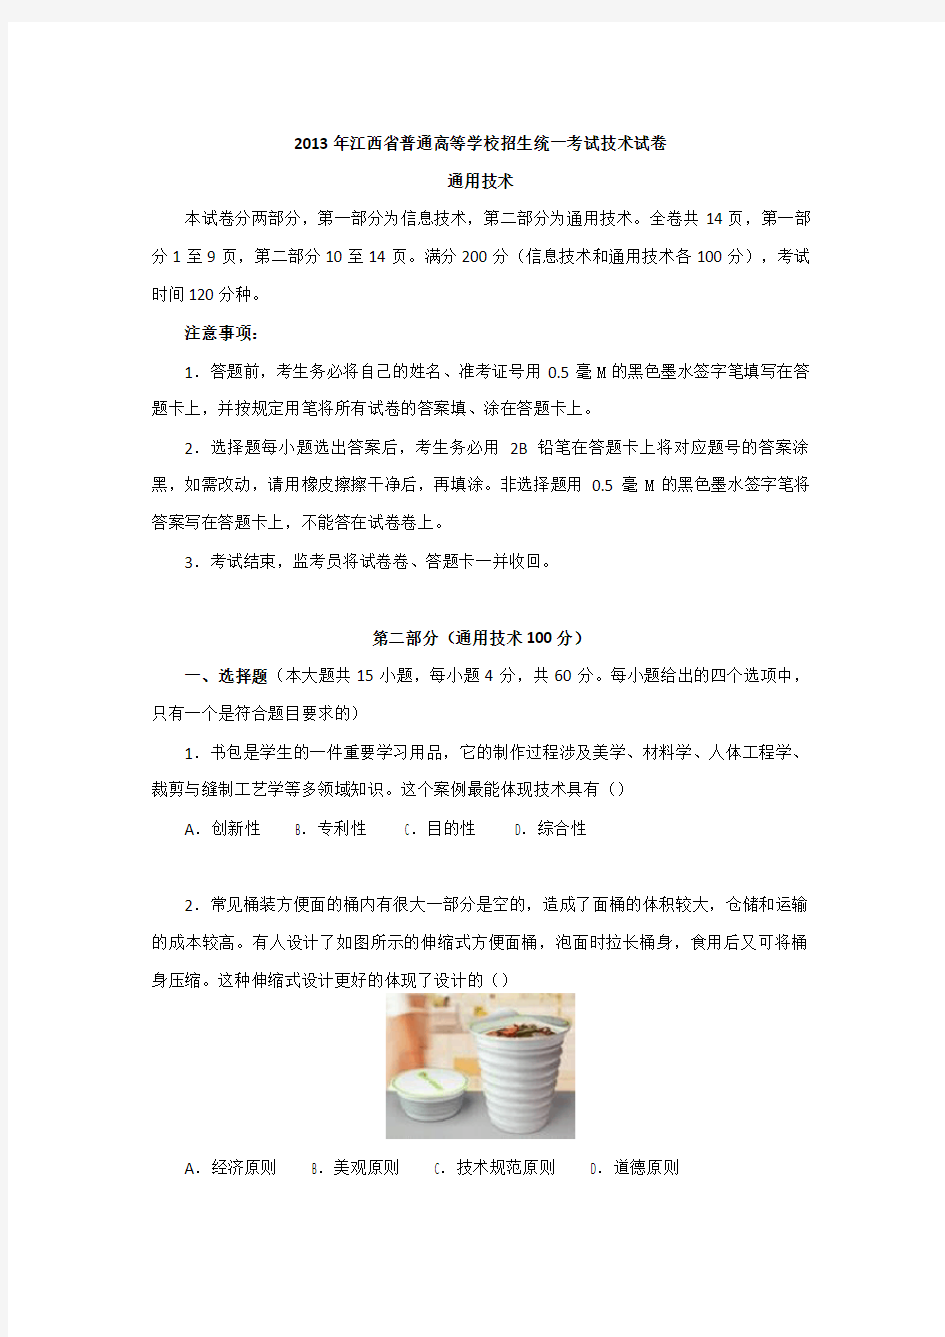 江西省普通高等学校招生统一考试技术考试